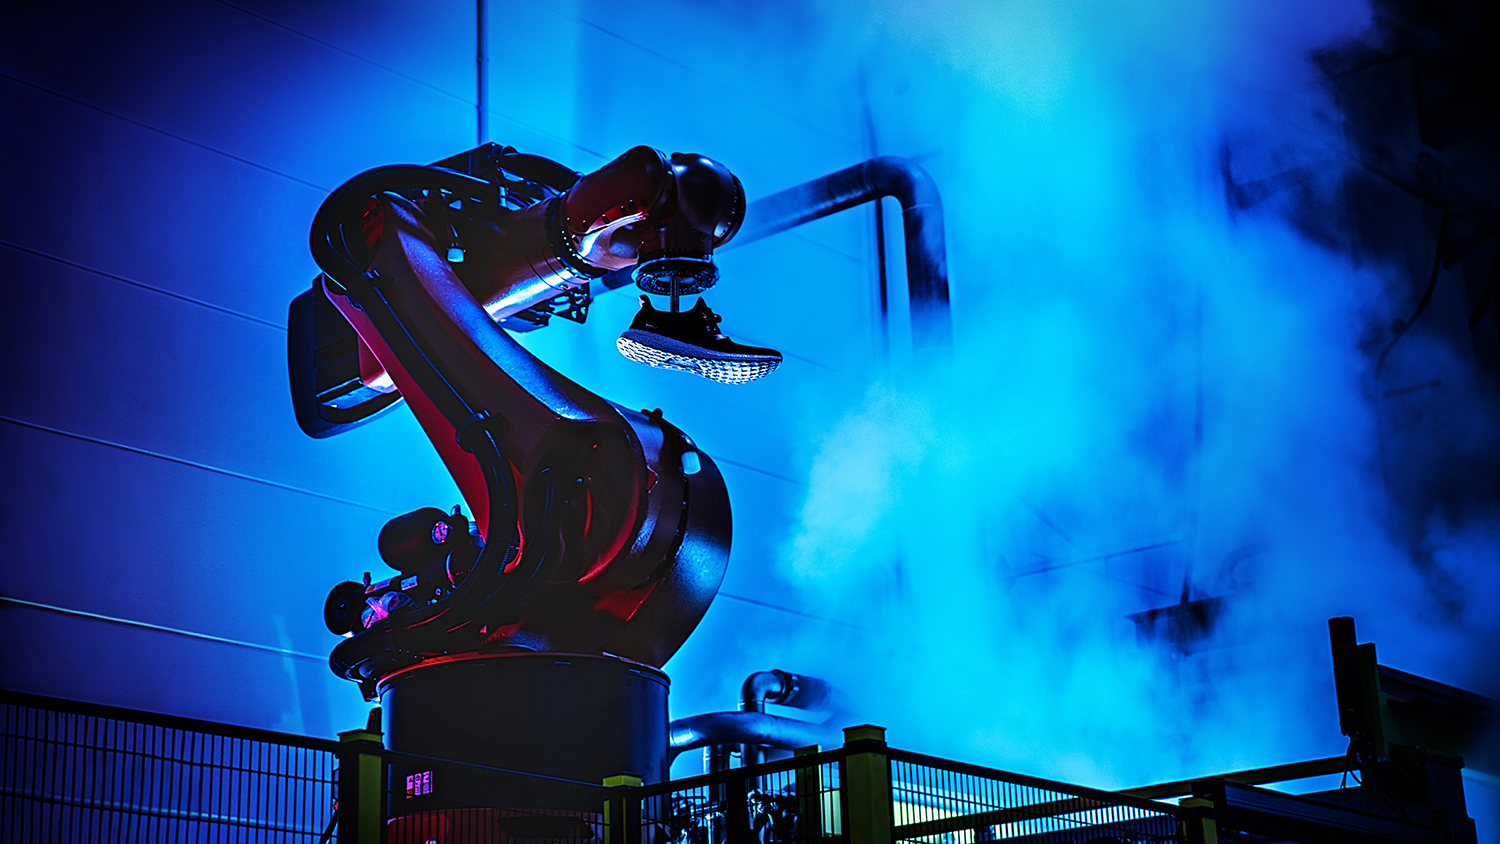 פס ייצור רובוטי במפעל החדש של אדידס(צילום: יח"צ)